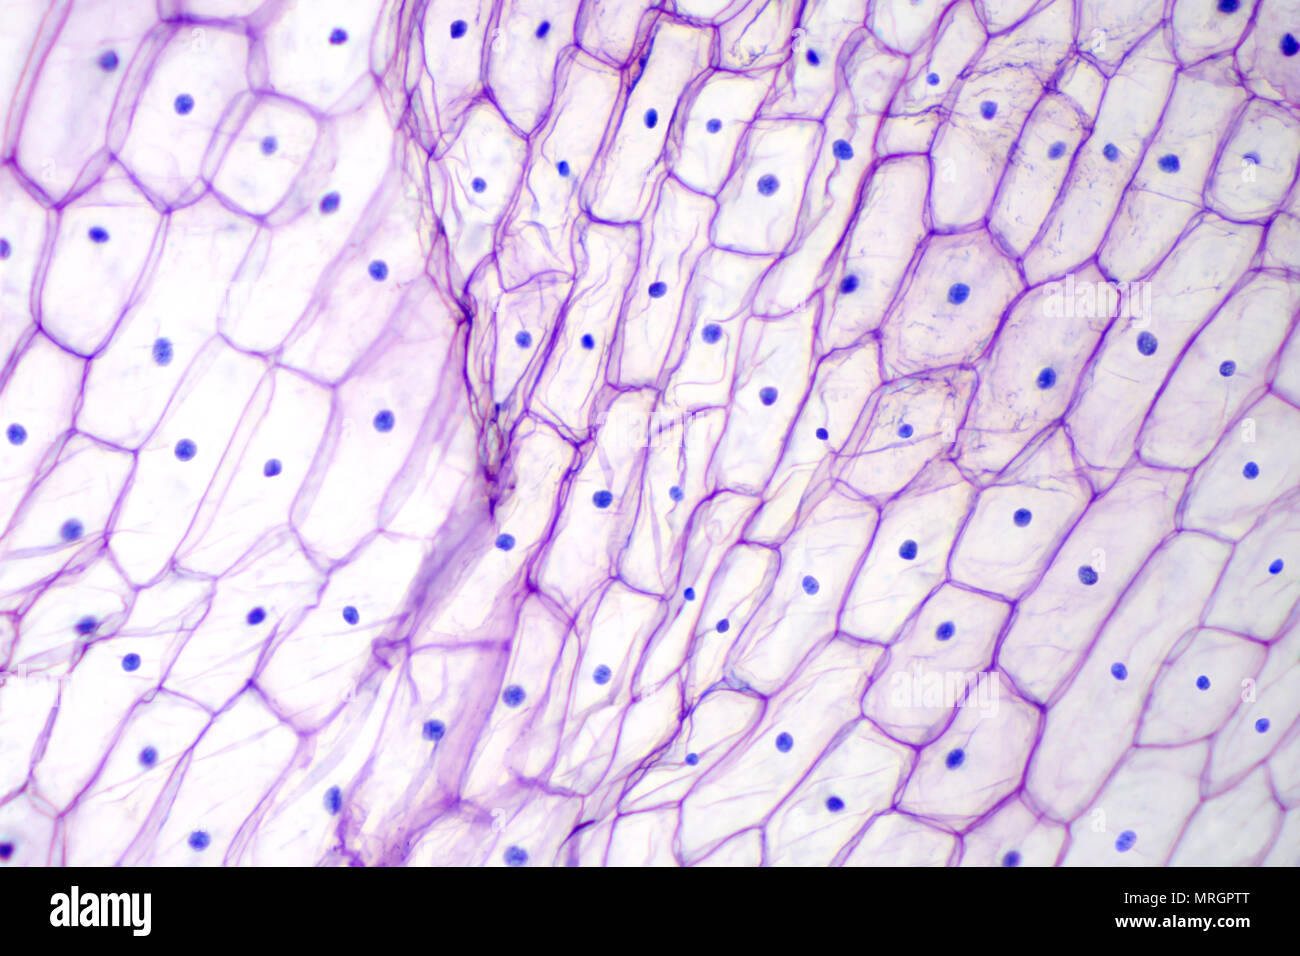 Zwiebel epidermis unter dem Lichtmikroskop. Violett gefärbt, große epidermalen Zellen einer Zwiebel, Allium cepa, in einer einzigen Schicht. Foto. Stockfoto